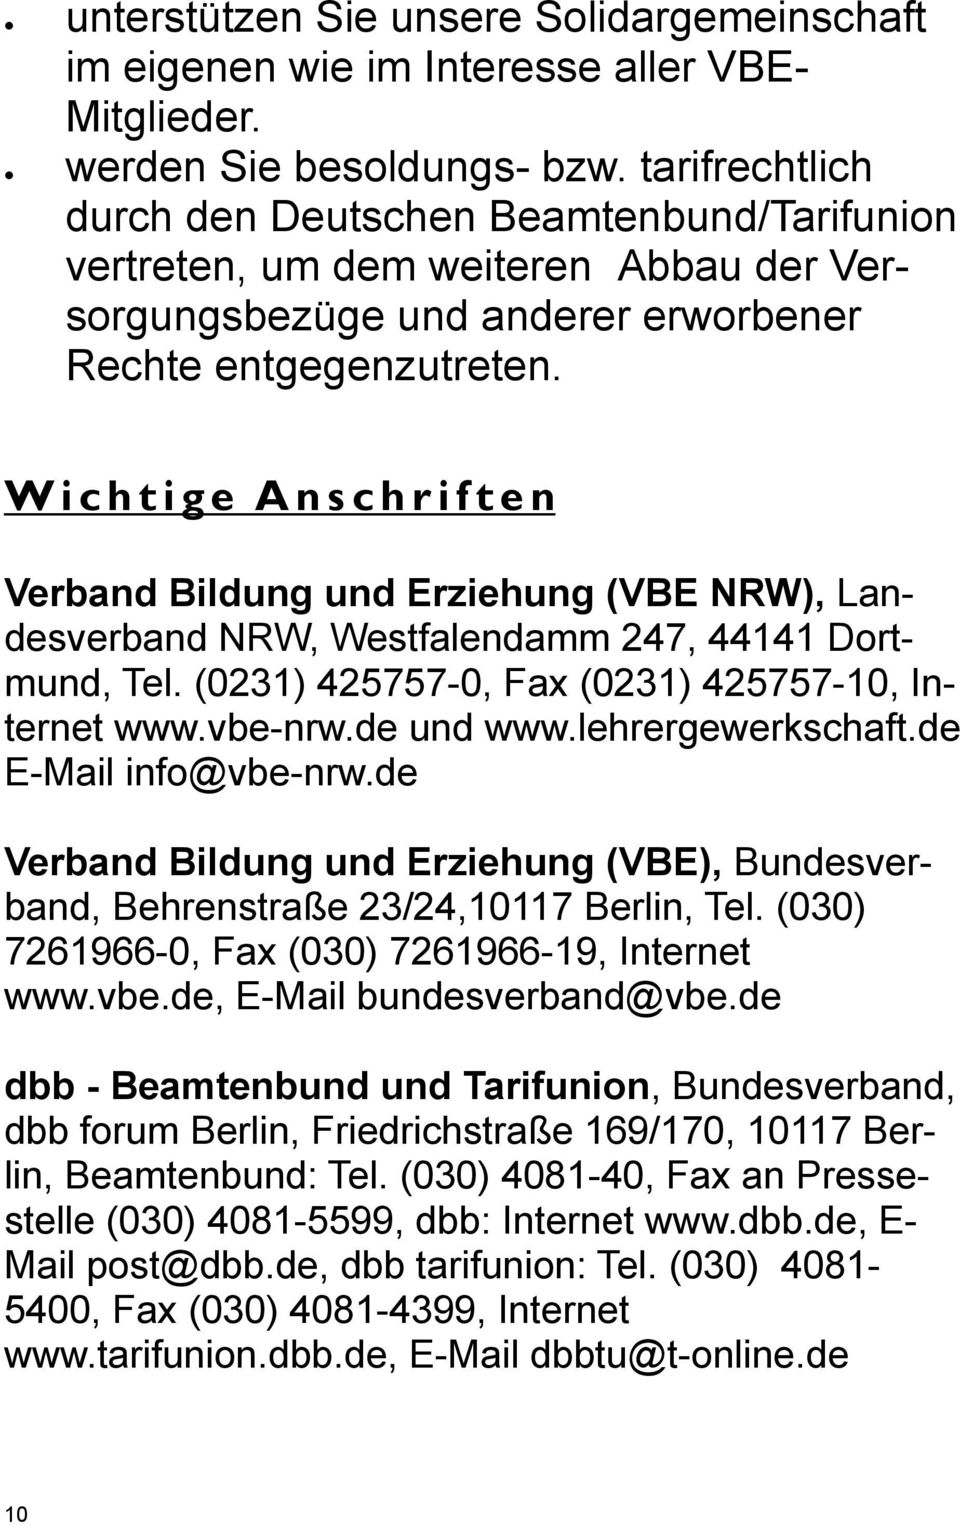 Wichtige Anschriften Verband Bildung und Erziehung (VBE NRW), Landesverband NRW, Westfalendamm 247, 44141 Dortmund, Tel. (0231) 425757-0, Fax (0231) 425757-10, Internet www.vbe-nrw.de und www.